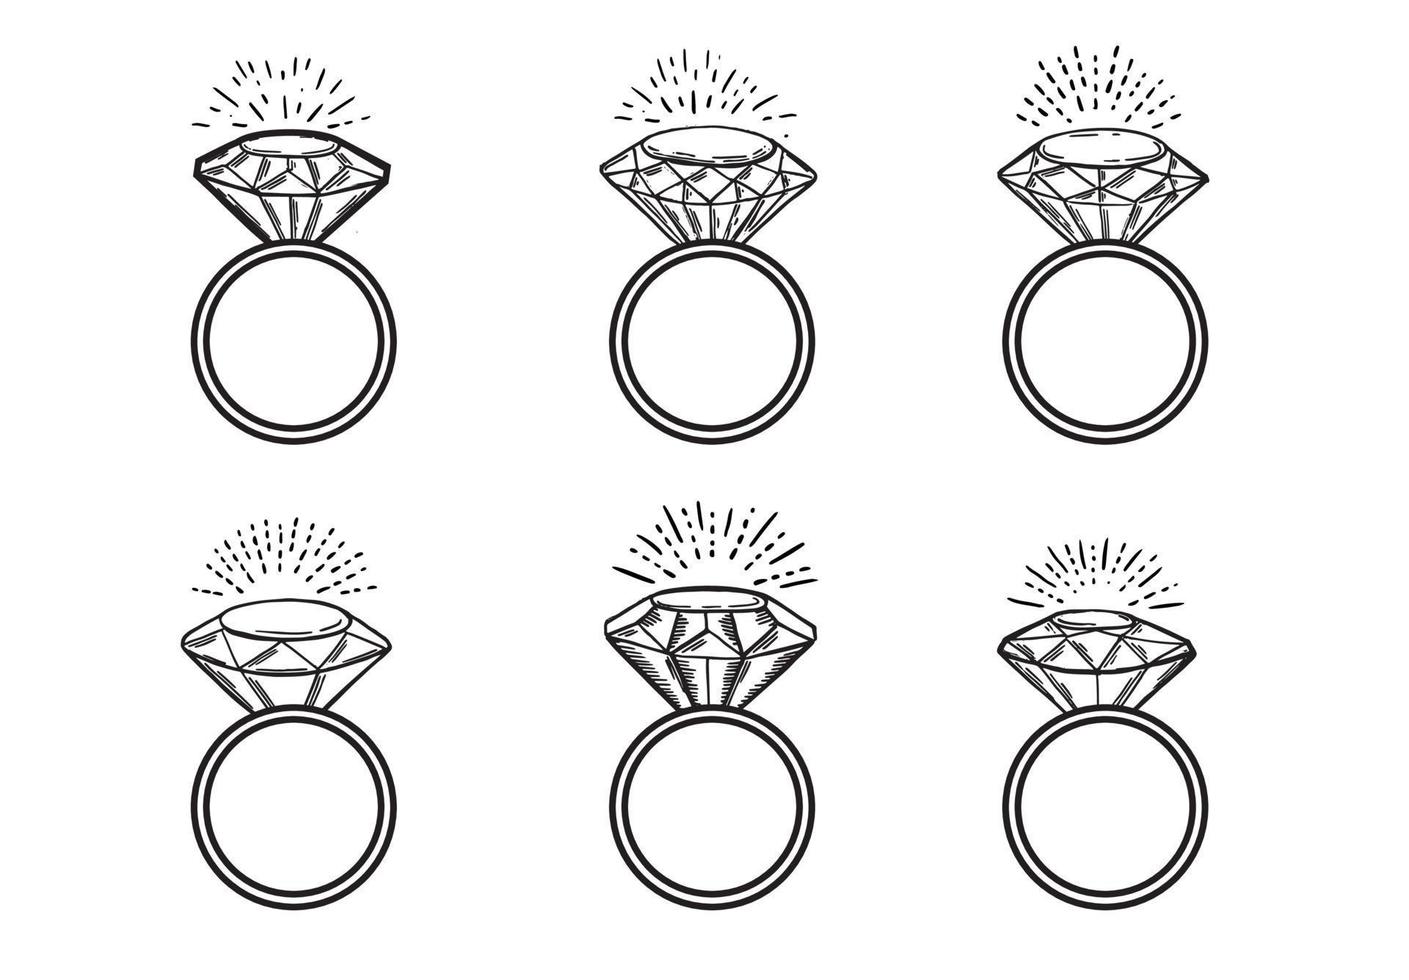 diamante anelli, mano disegnato stile, vettore illustrazione.